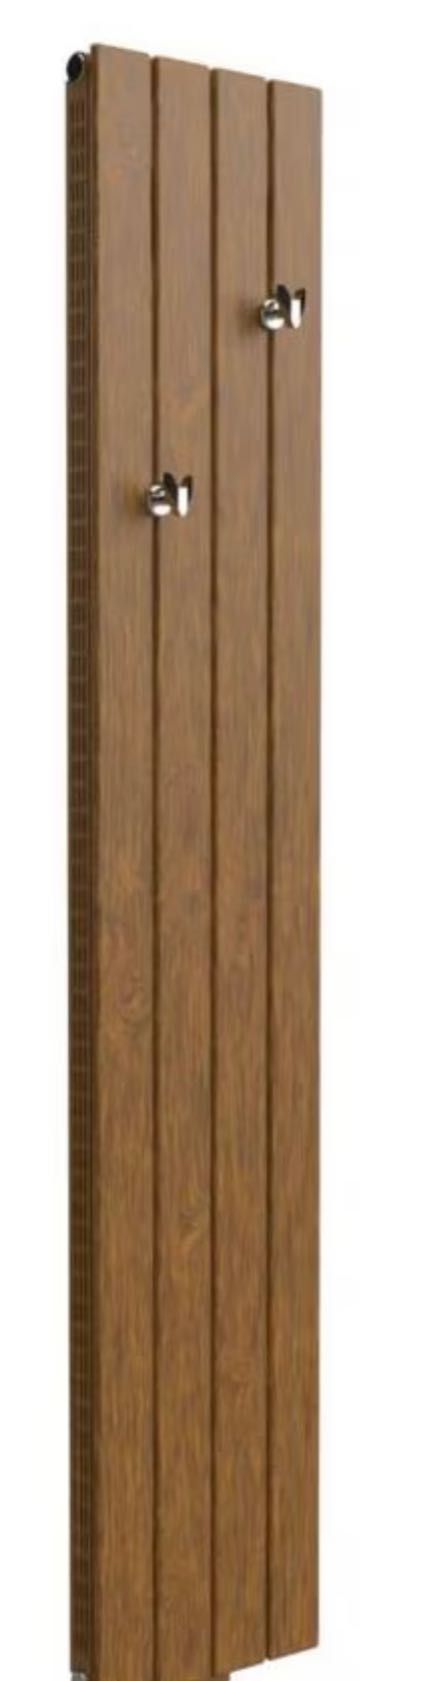 Grzejnik dekoracyjny łazienkowy drewno drewniany ALTUS AVV GORGIEL NEW